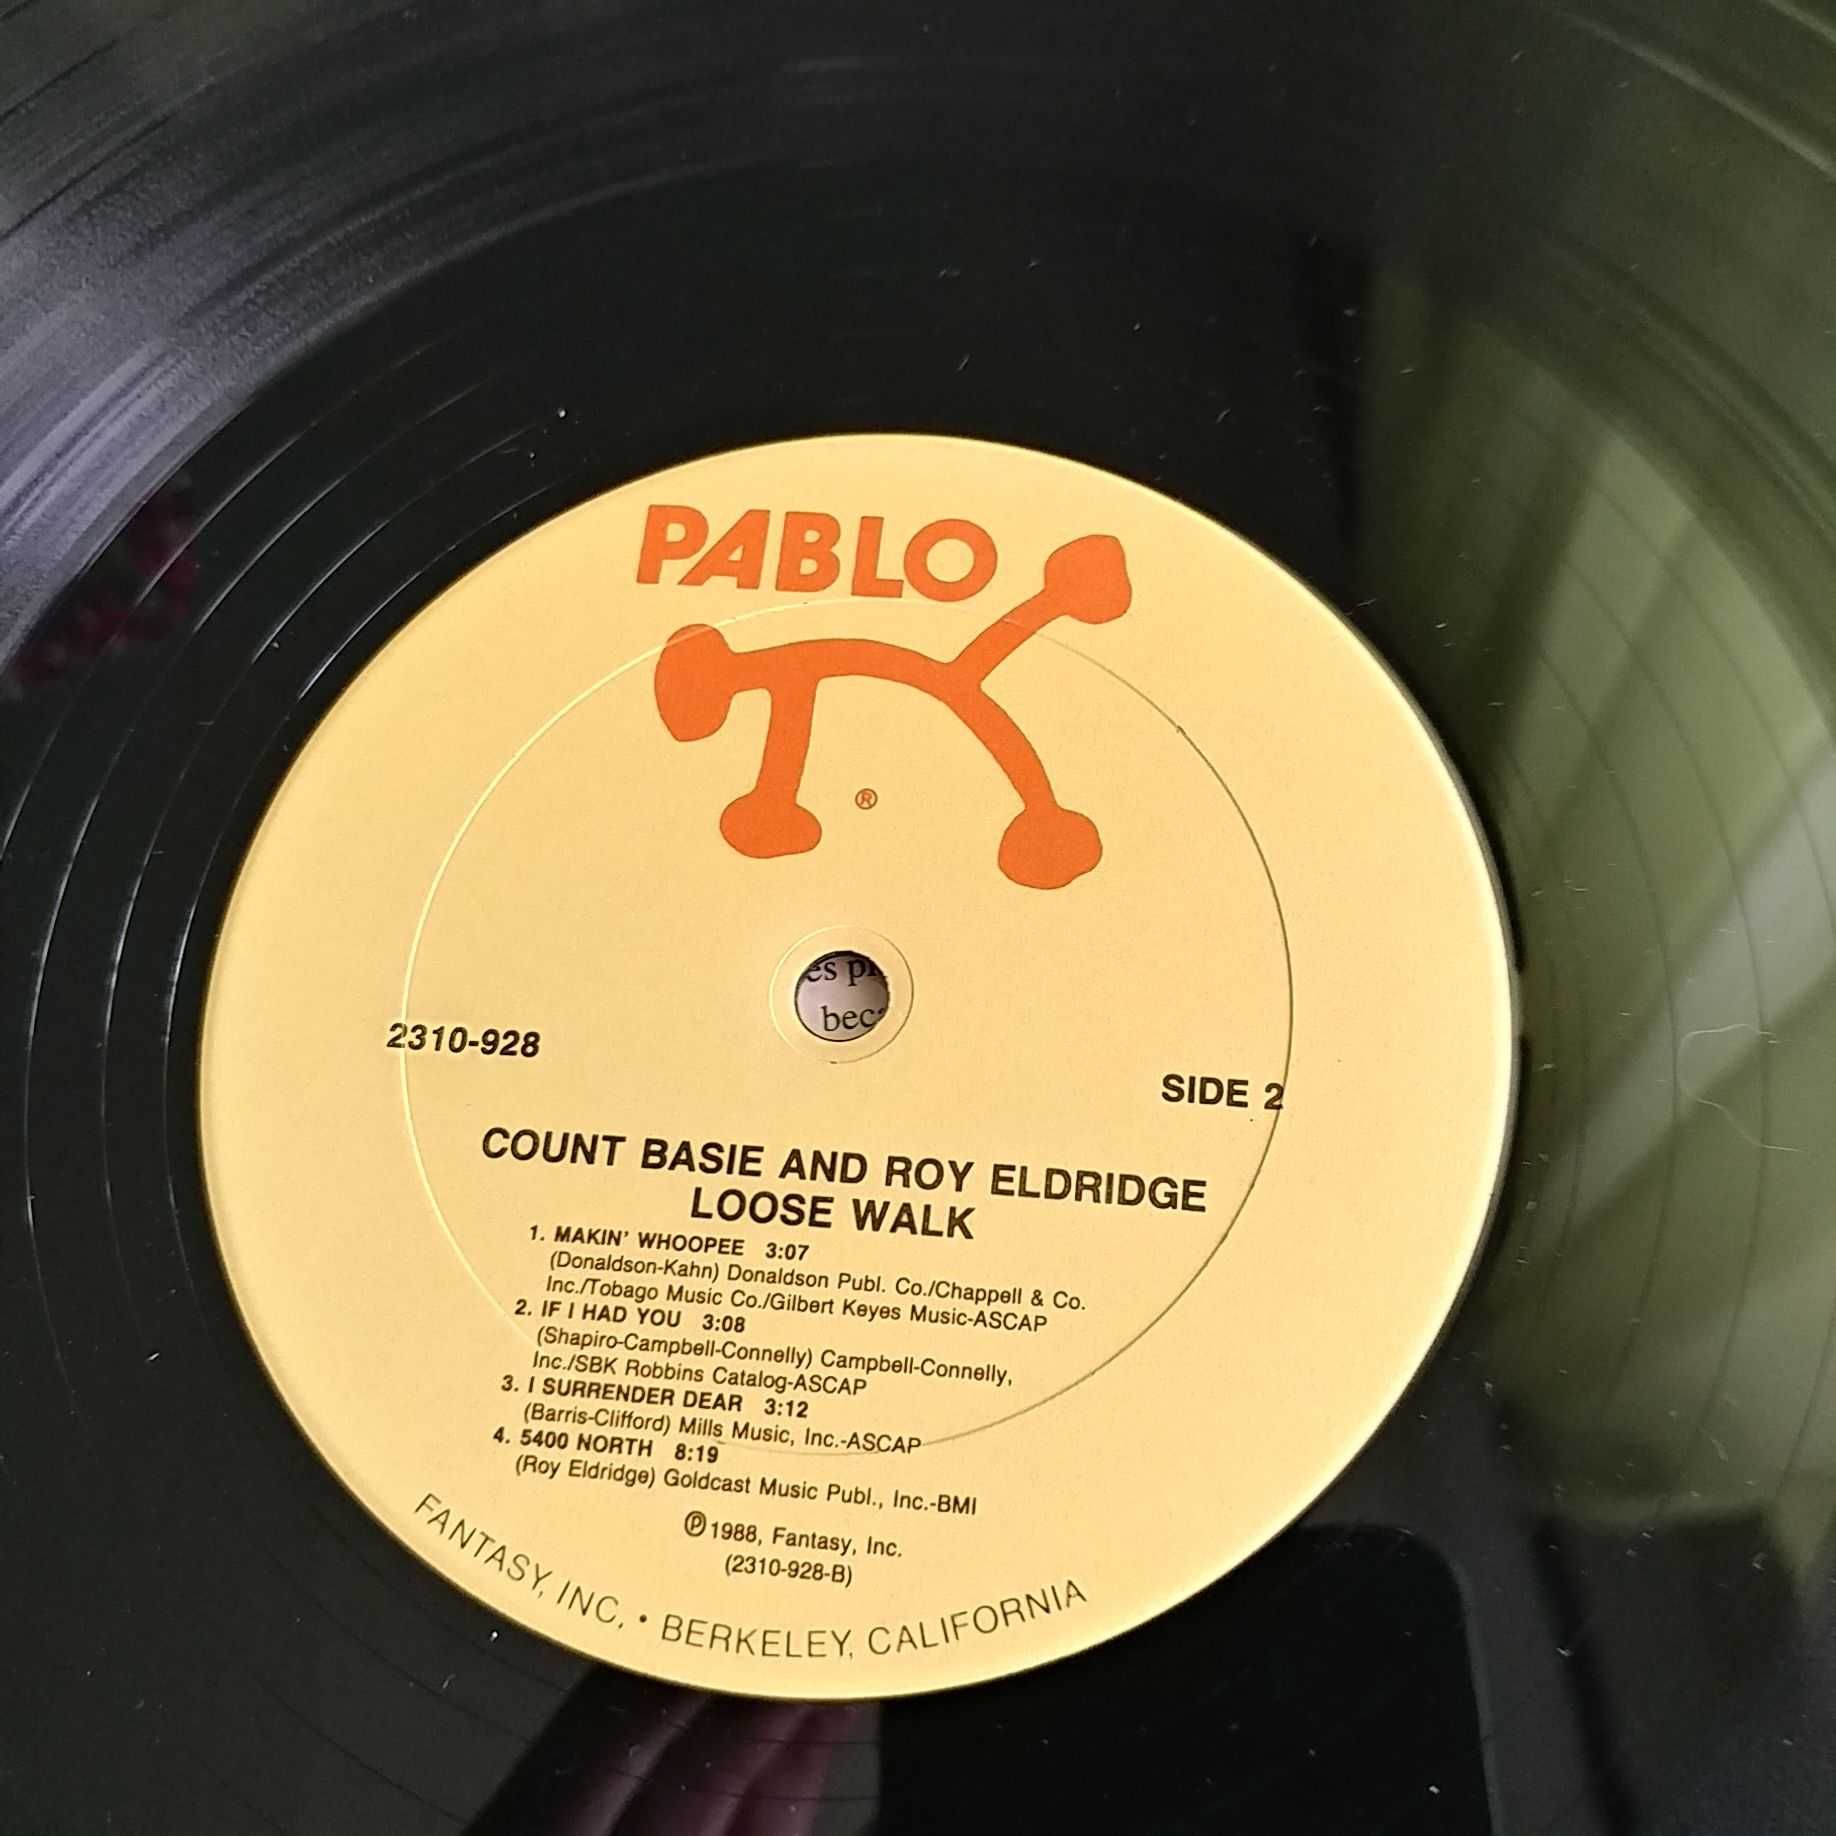 Count Basie & Roy Eldridge – Loose Walk 1988 LP Vinyl